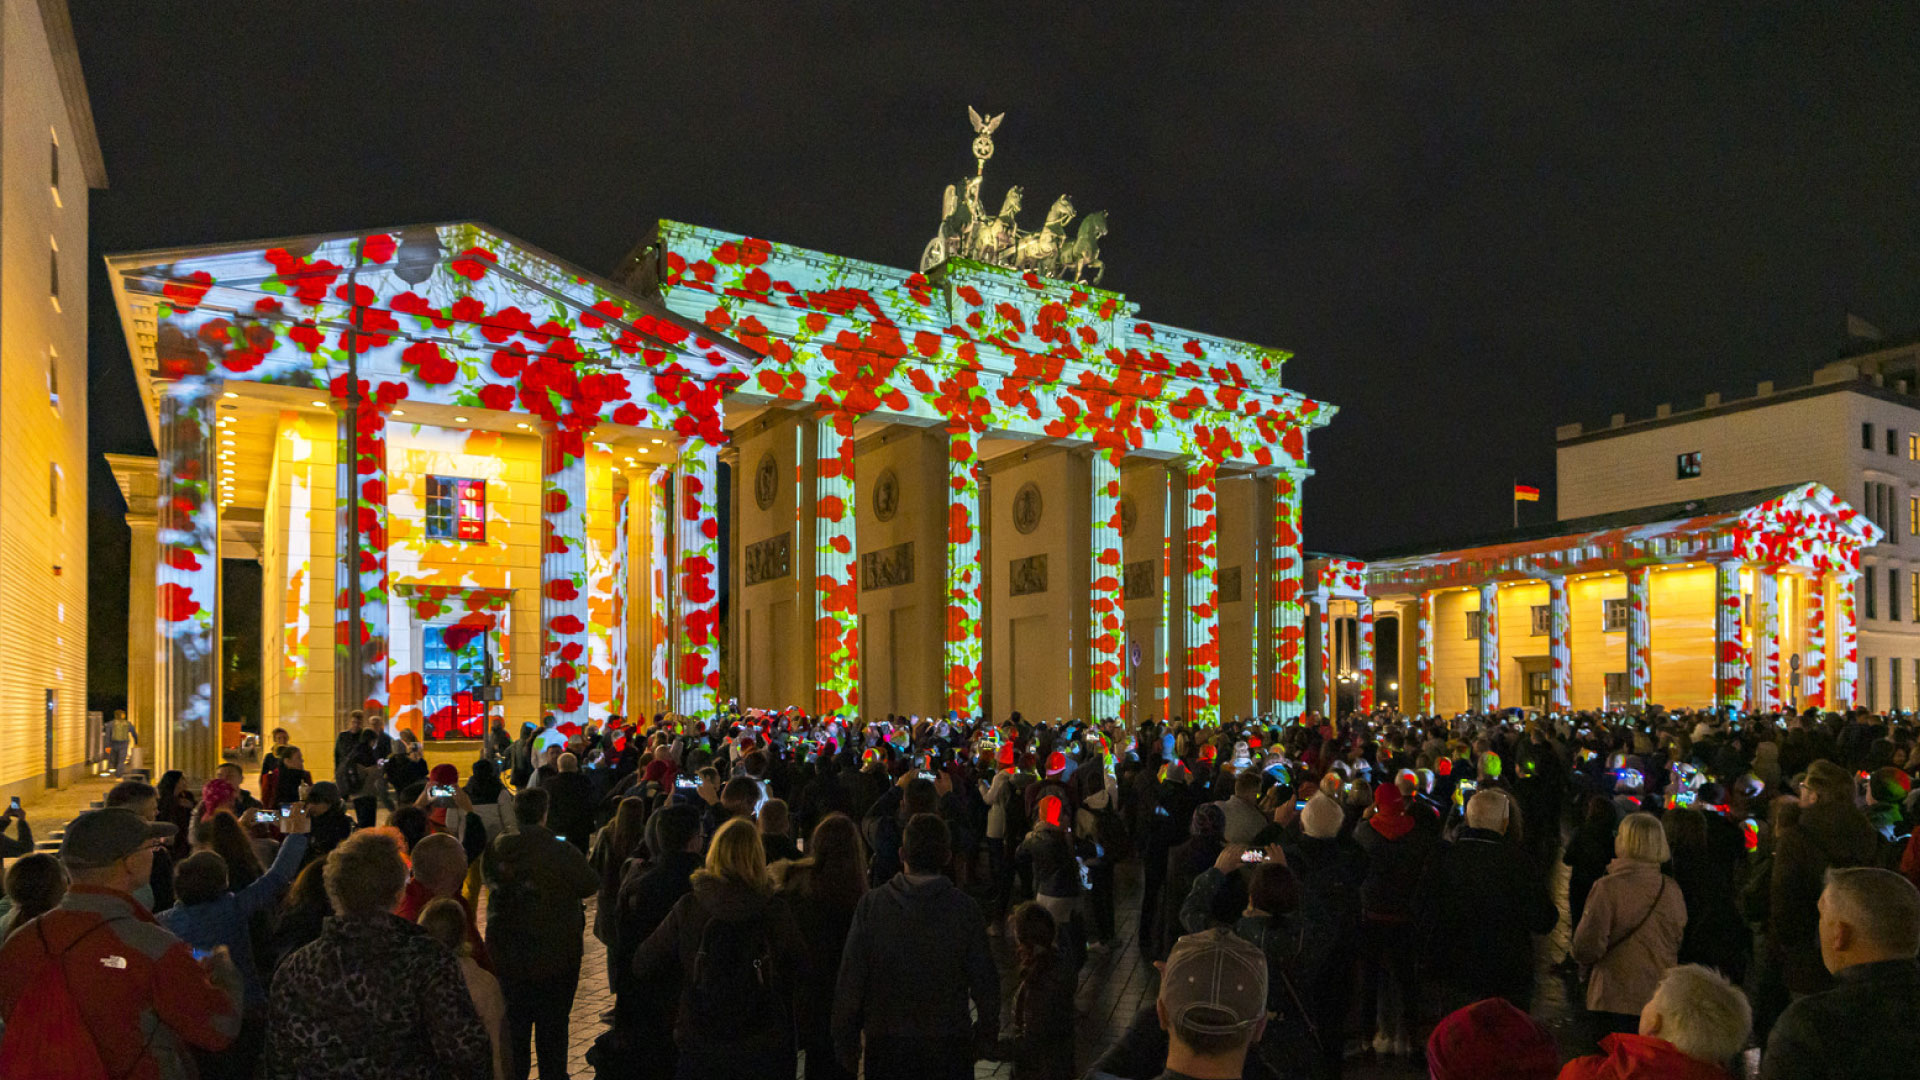 PRG lieferte mehr als 20 Projektoren für die Umsetzung dieser Illuminationen beim Festival of Lights in Berlin an den unterschiedlichsten Orten.